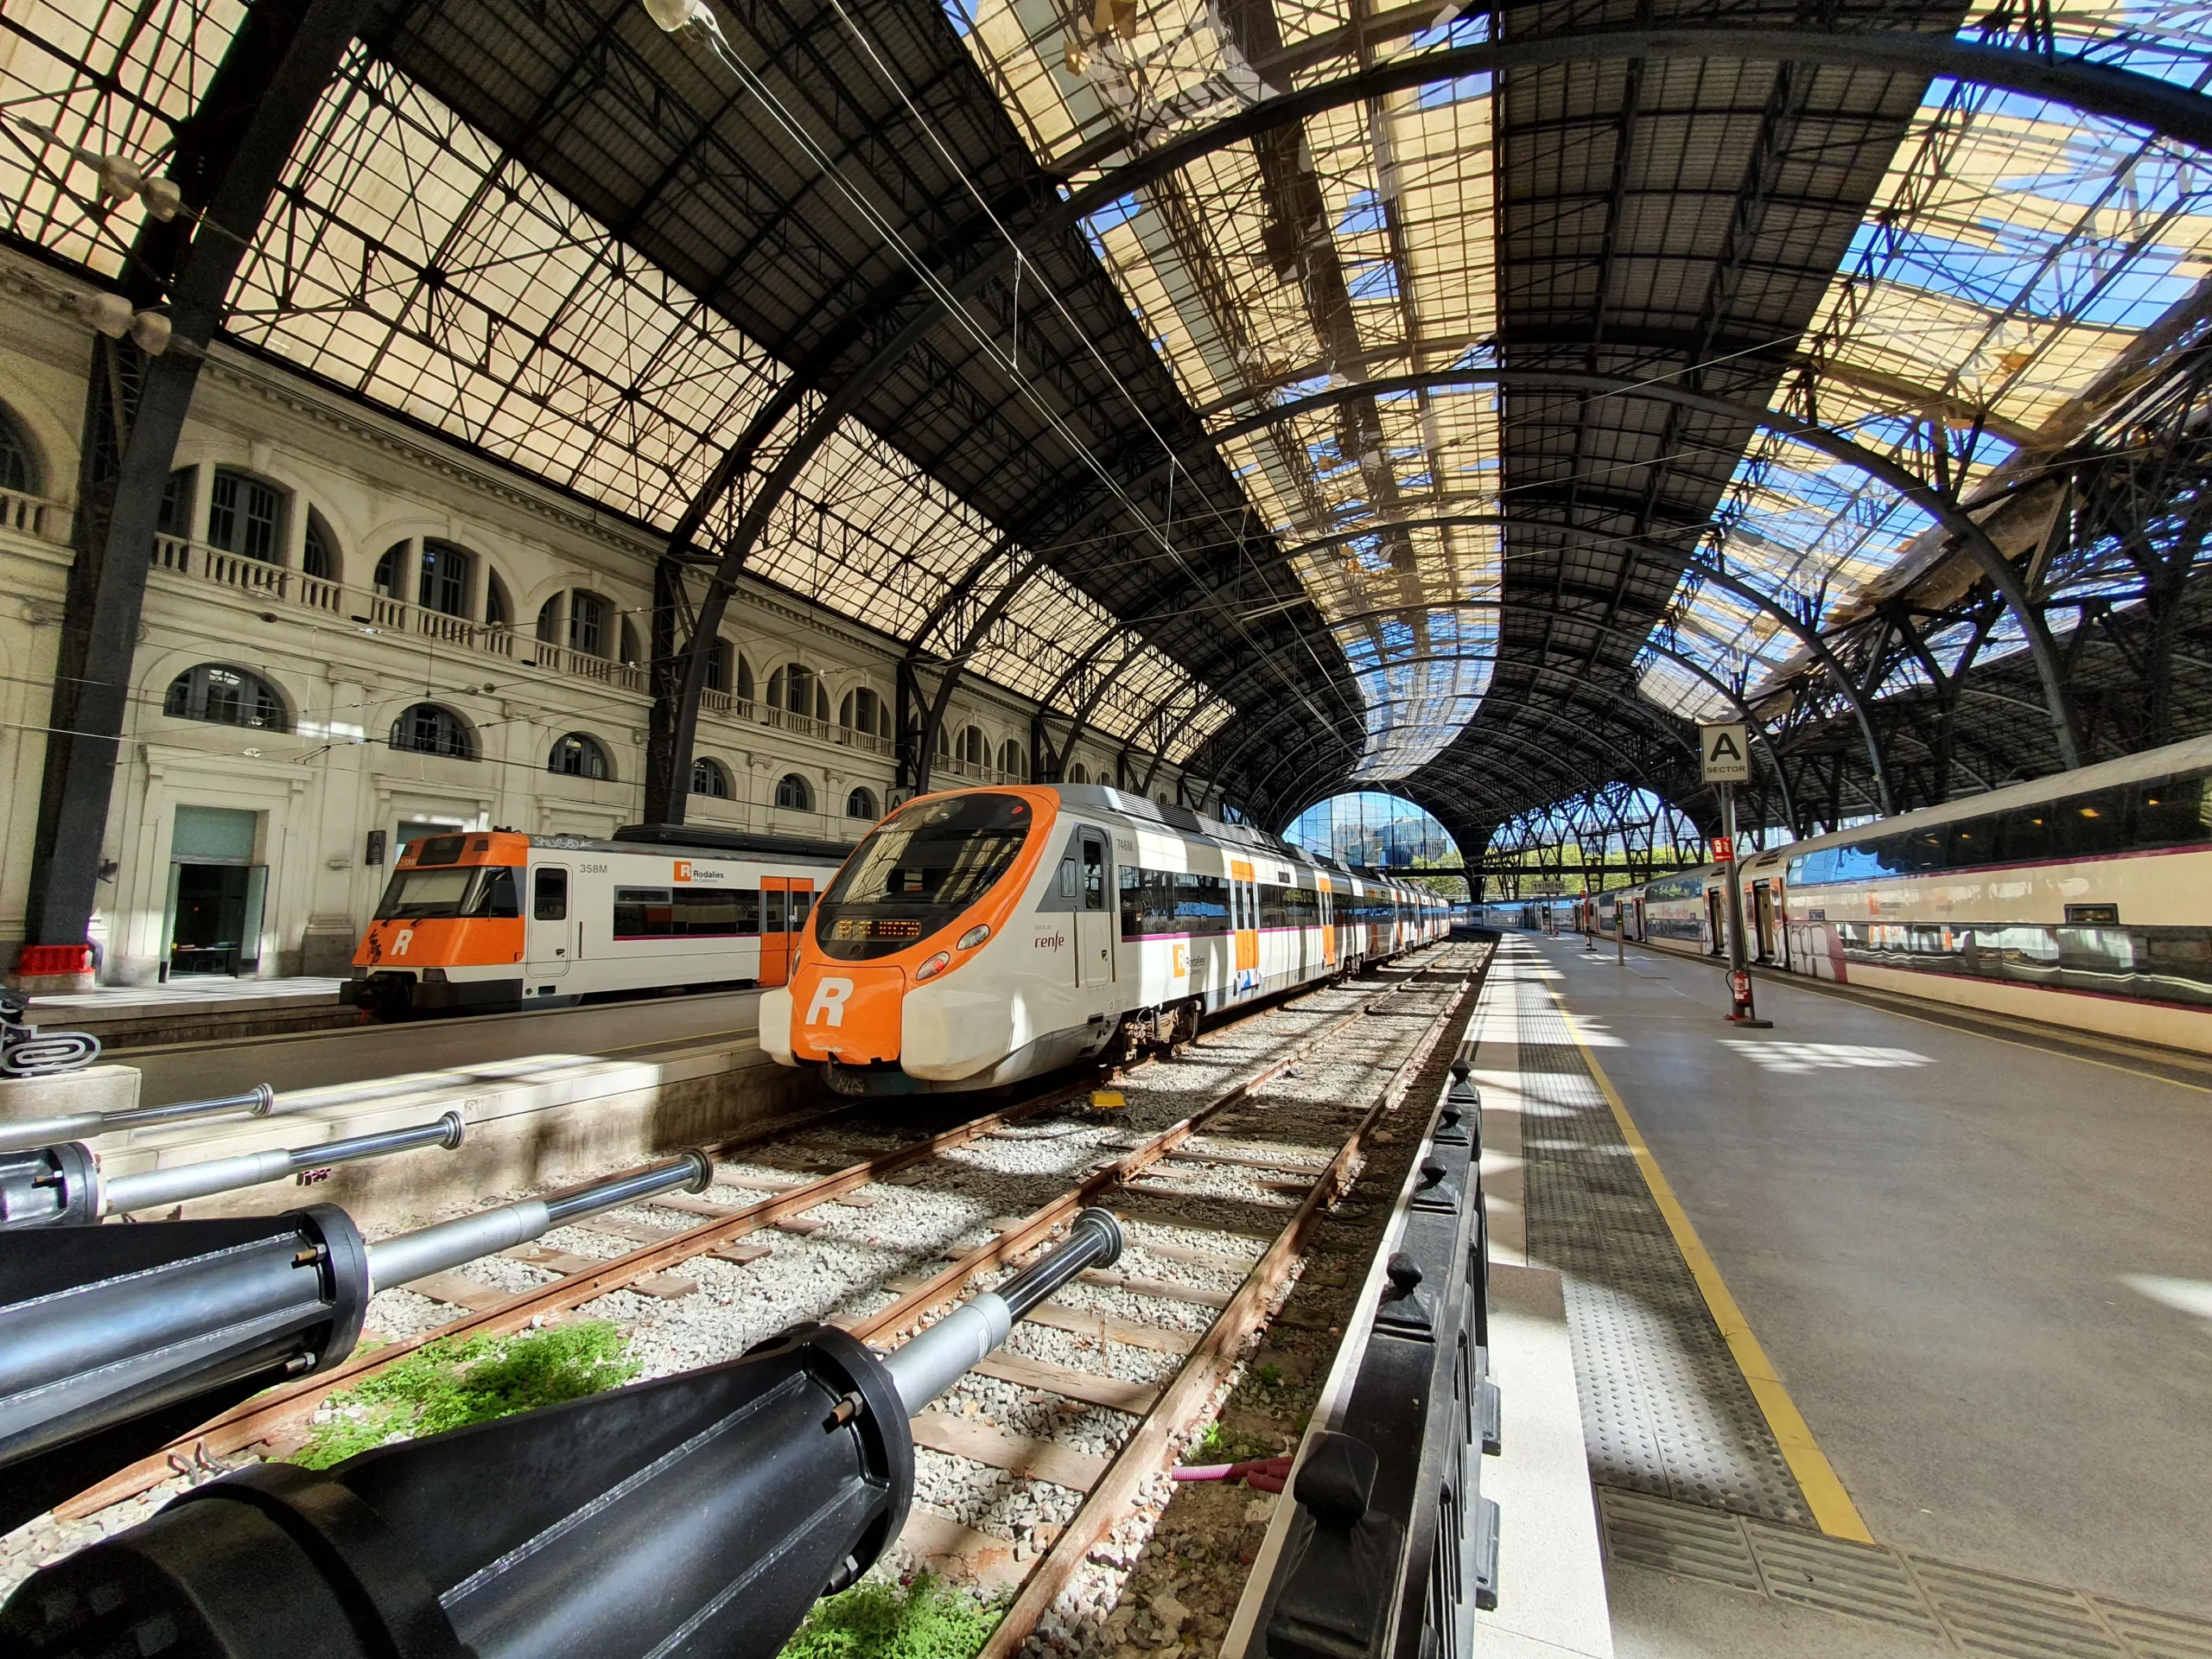 abonos ferrocarriles catalanes - Qué es un billete de tren integrado